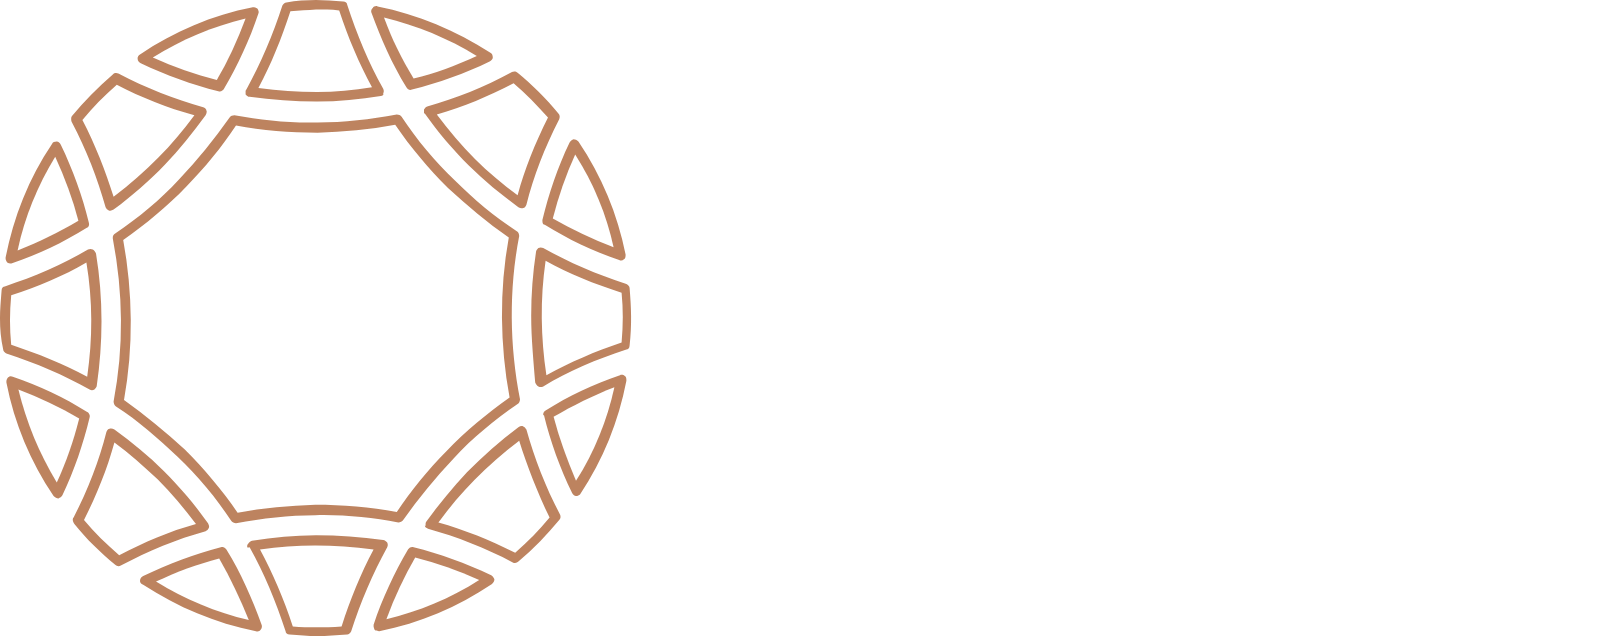 Rand Merchant Investment logo grand pour les fonds sombres (PNG transparent)